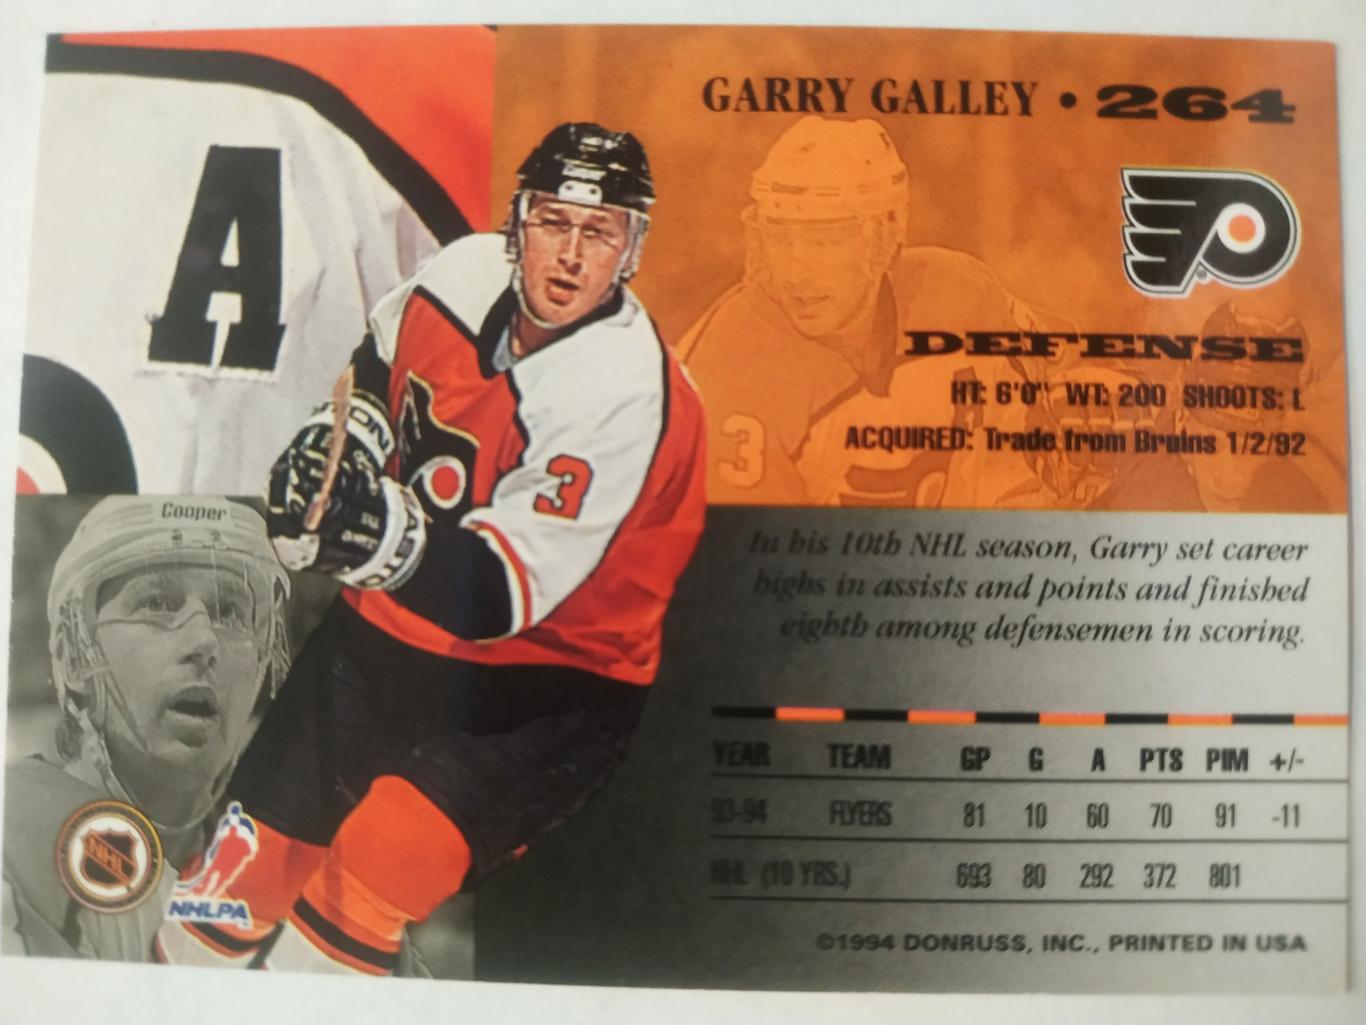 ХОККЕЙ КАРТОЧКА НХЛ DONRUSS LEAF SET 1994-95 GARRY GALLEY PHILADELPHIA #264 1